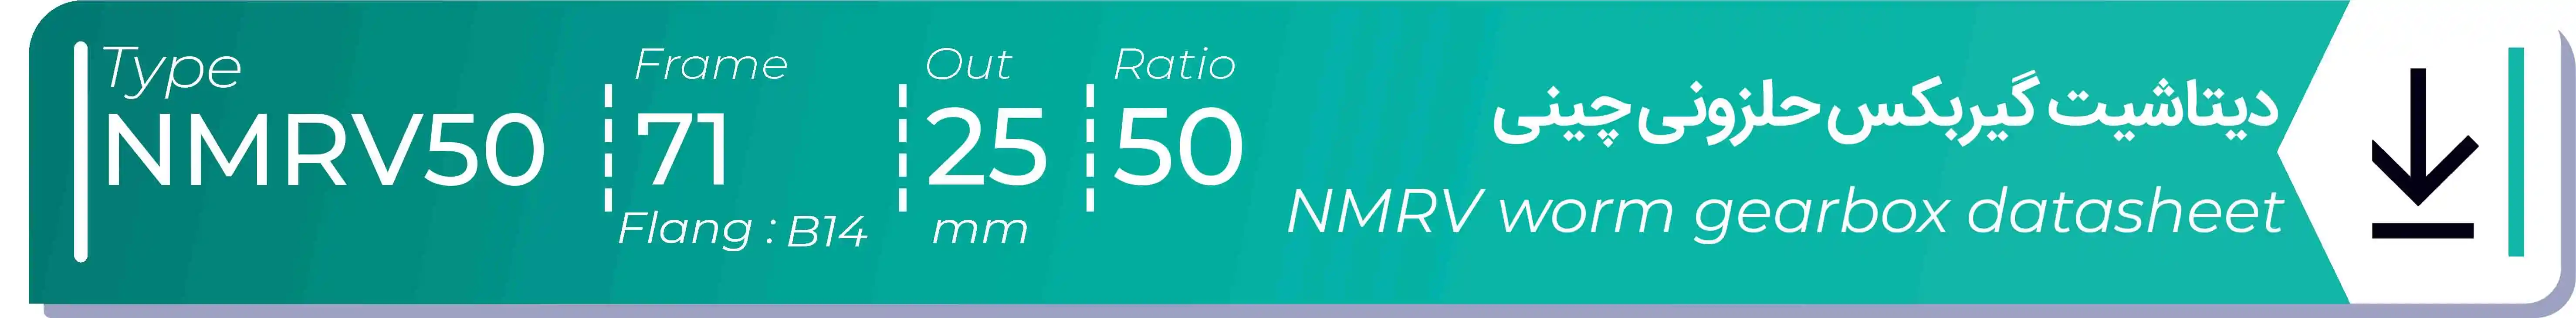  دیتاشیت و مشخصات فنی گیربکس حلزونی چینی   NMRV50  -  با خروجی 25- میلی متر و نسبت50 و فریم 71